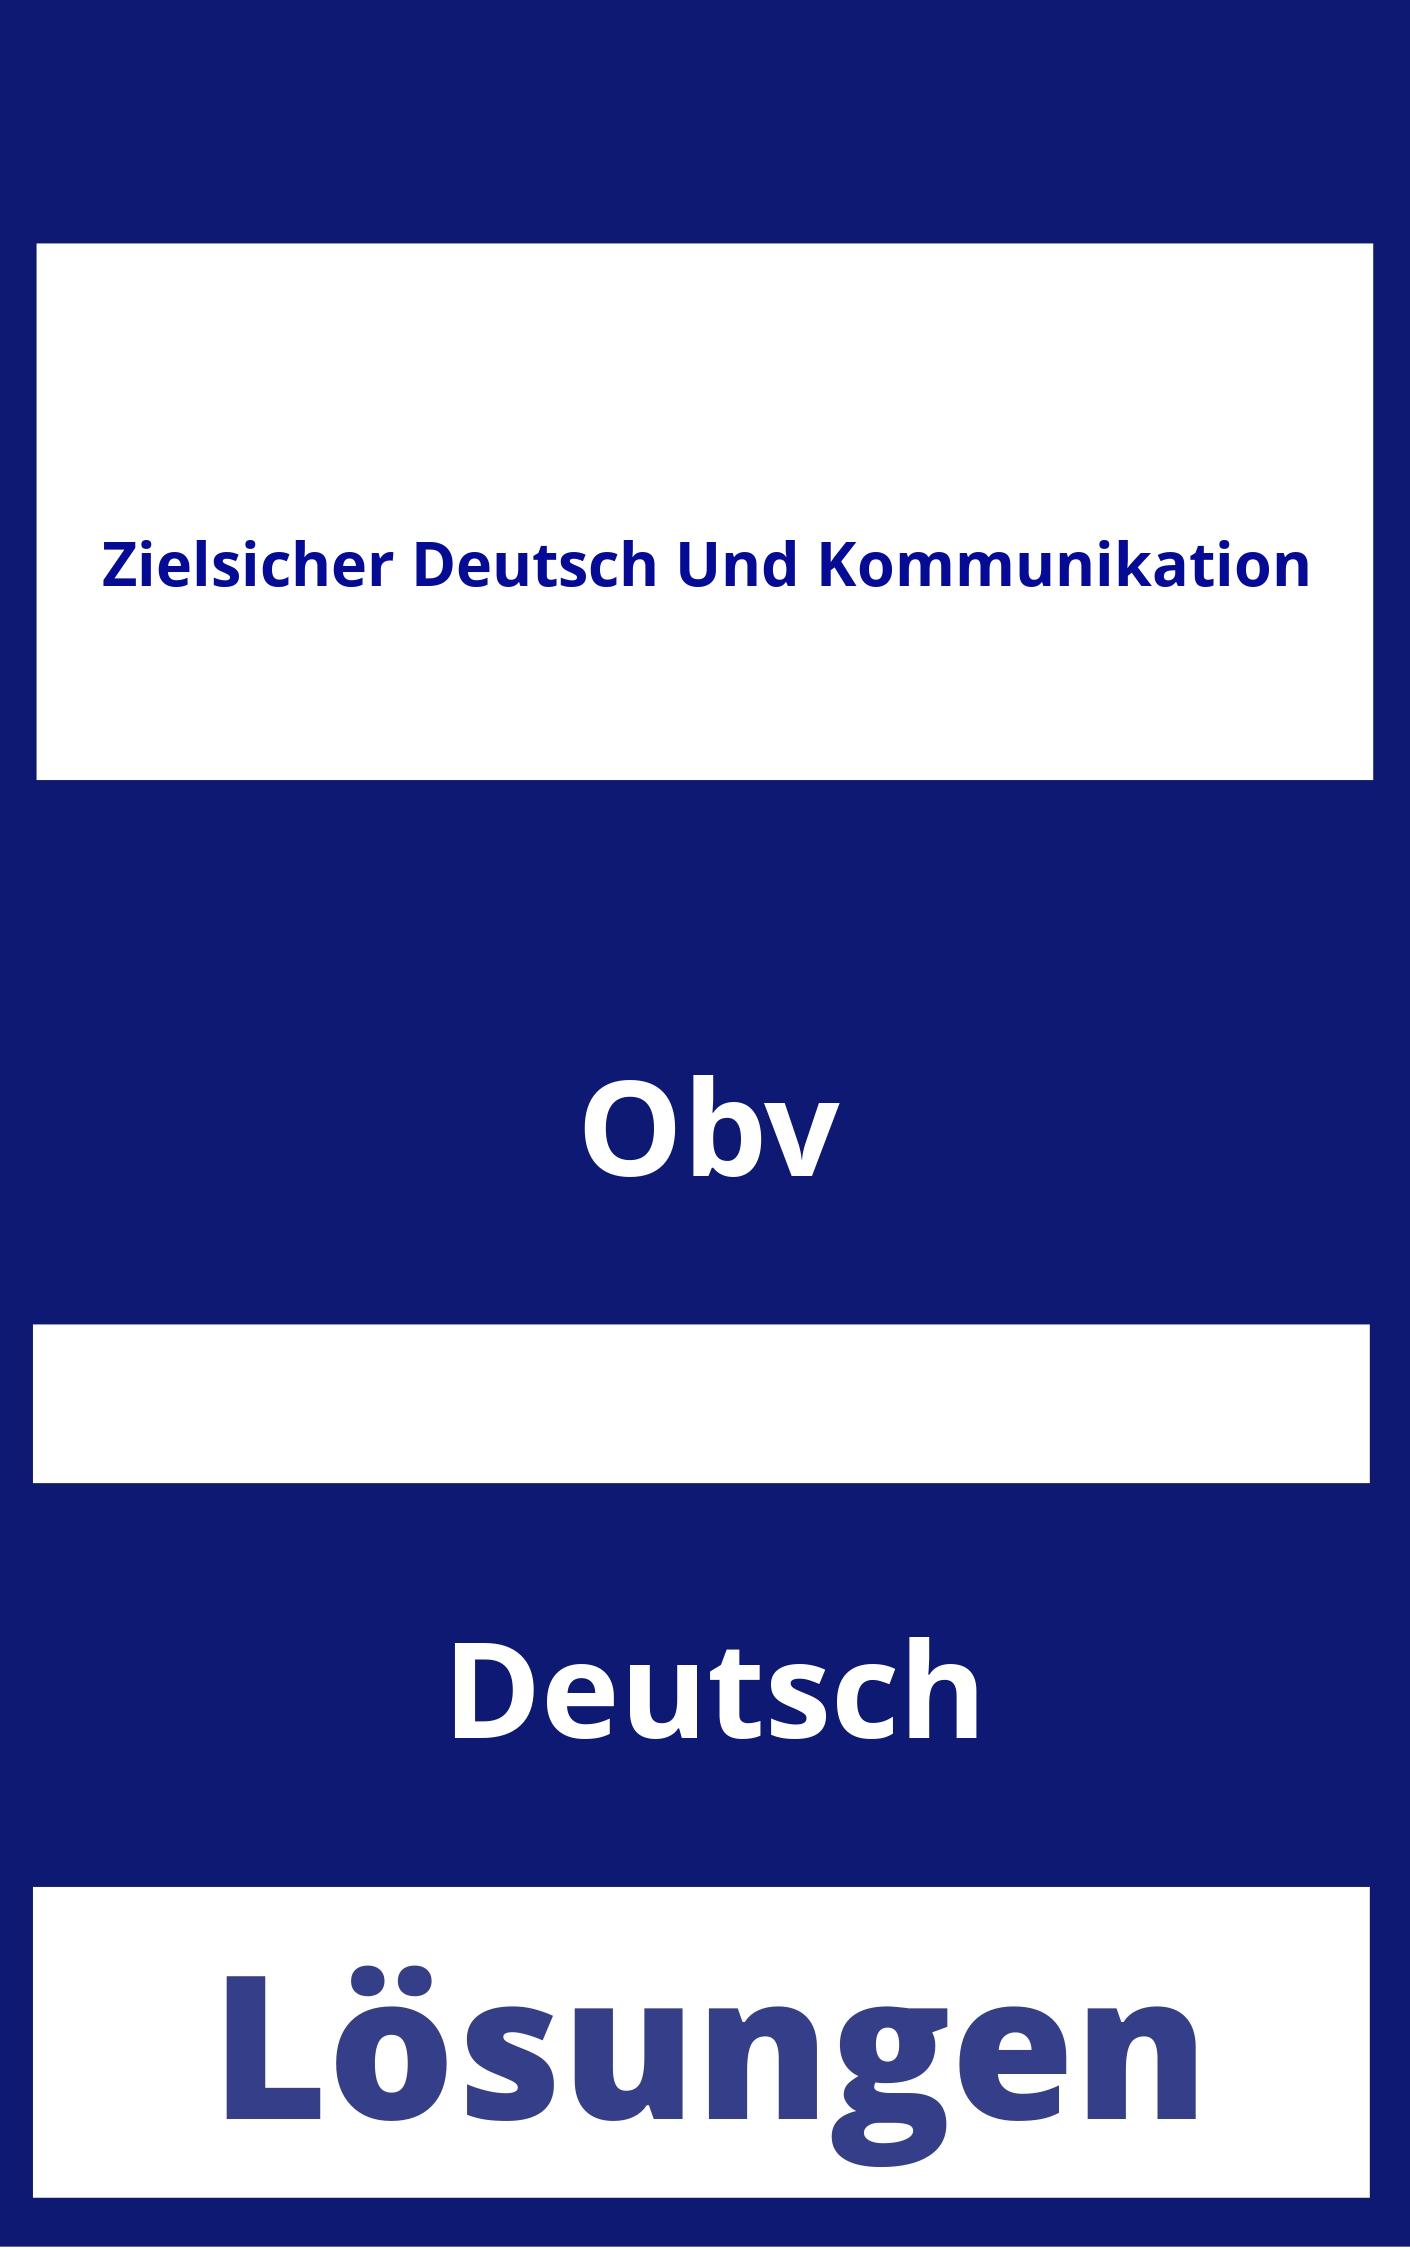 Zielsicher Deutsch und Kommunikation Lösungen PDF